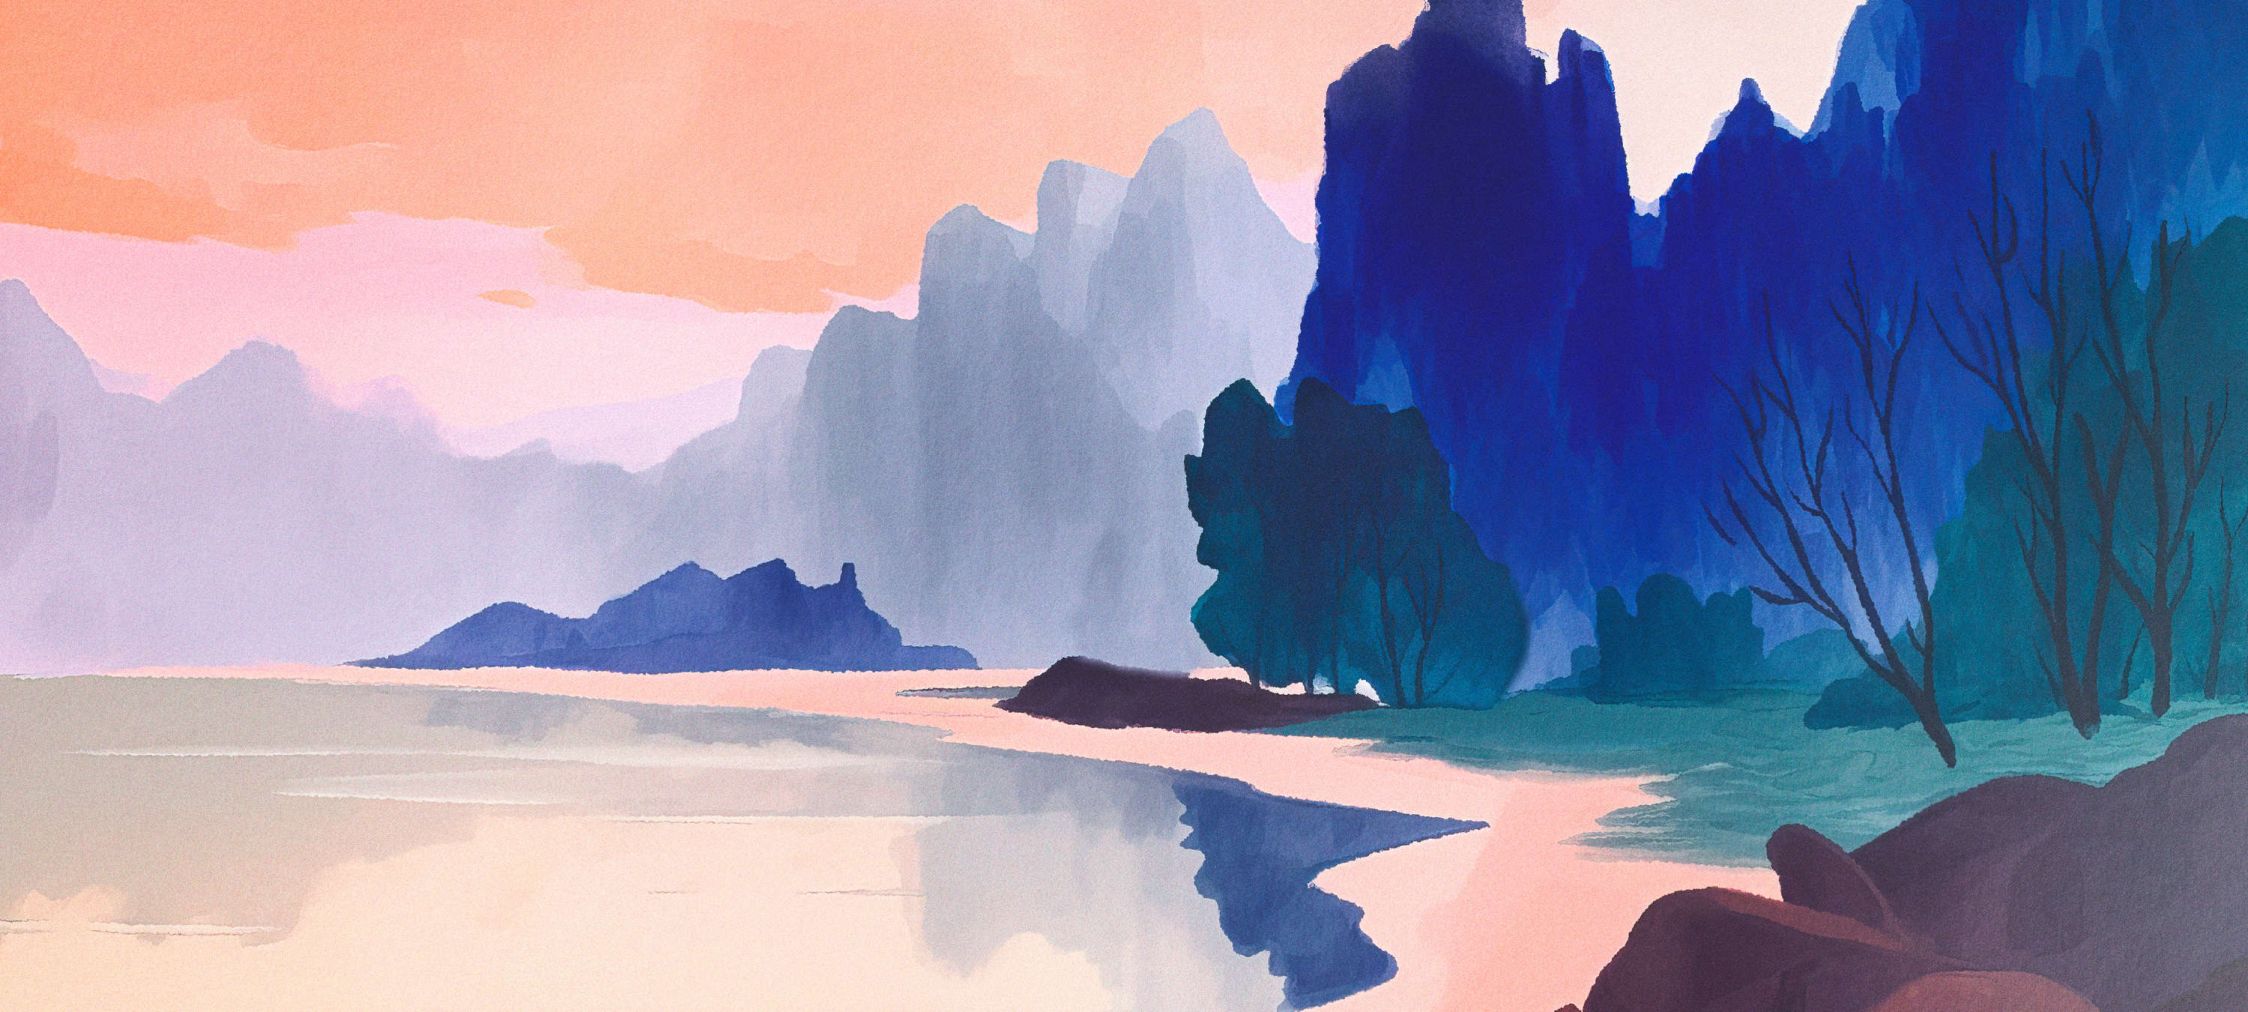             Fototapete »aurora« - Landschaft mit See im Sonnenuntergang – Blau, Rosa | Glattes, leicht perlmutt-schimmerndes Vlies
        